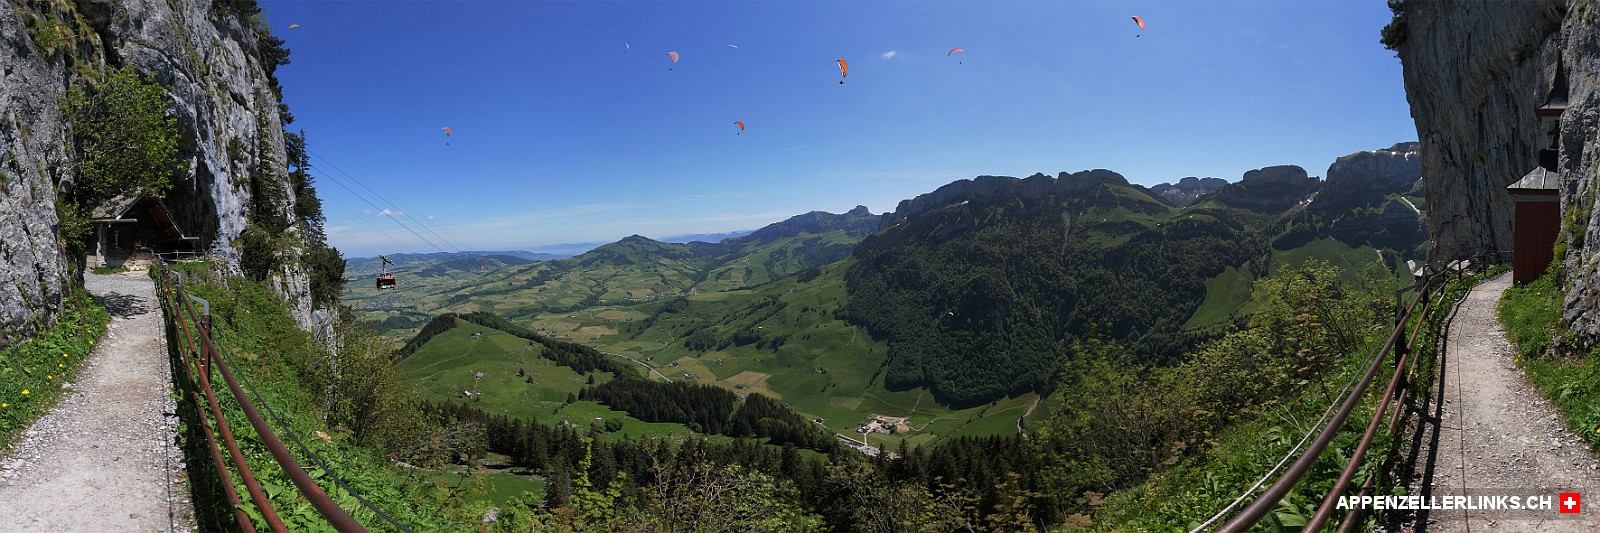 360°-Panorama Wildkirchli